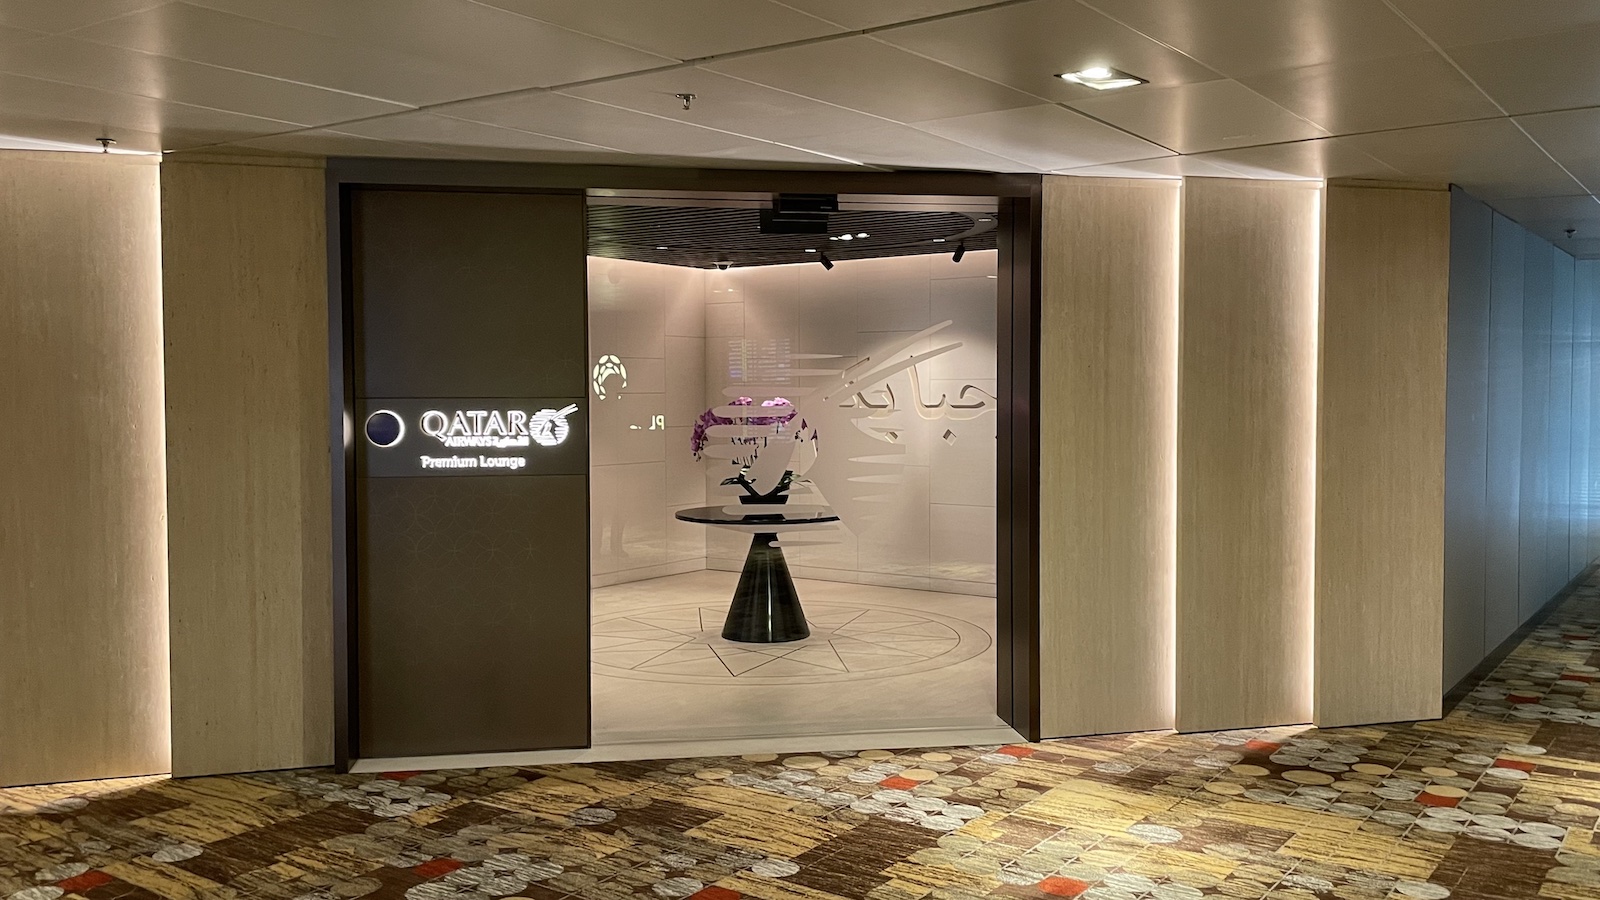 Qatar Airways Premium Lounge at Changi Airport